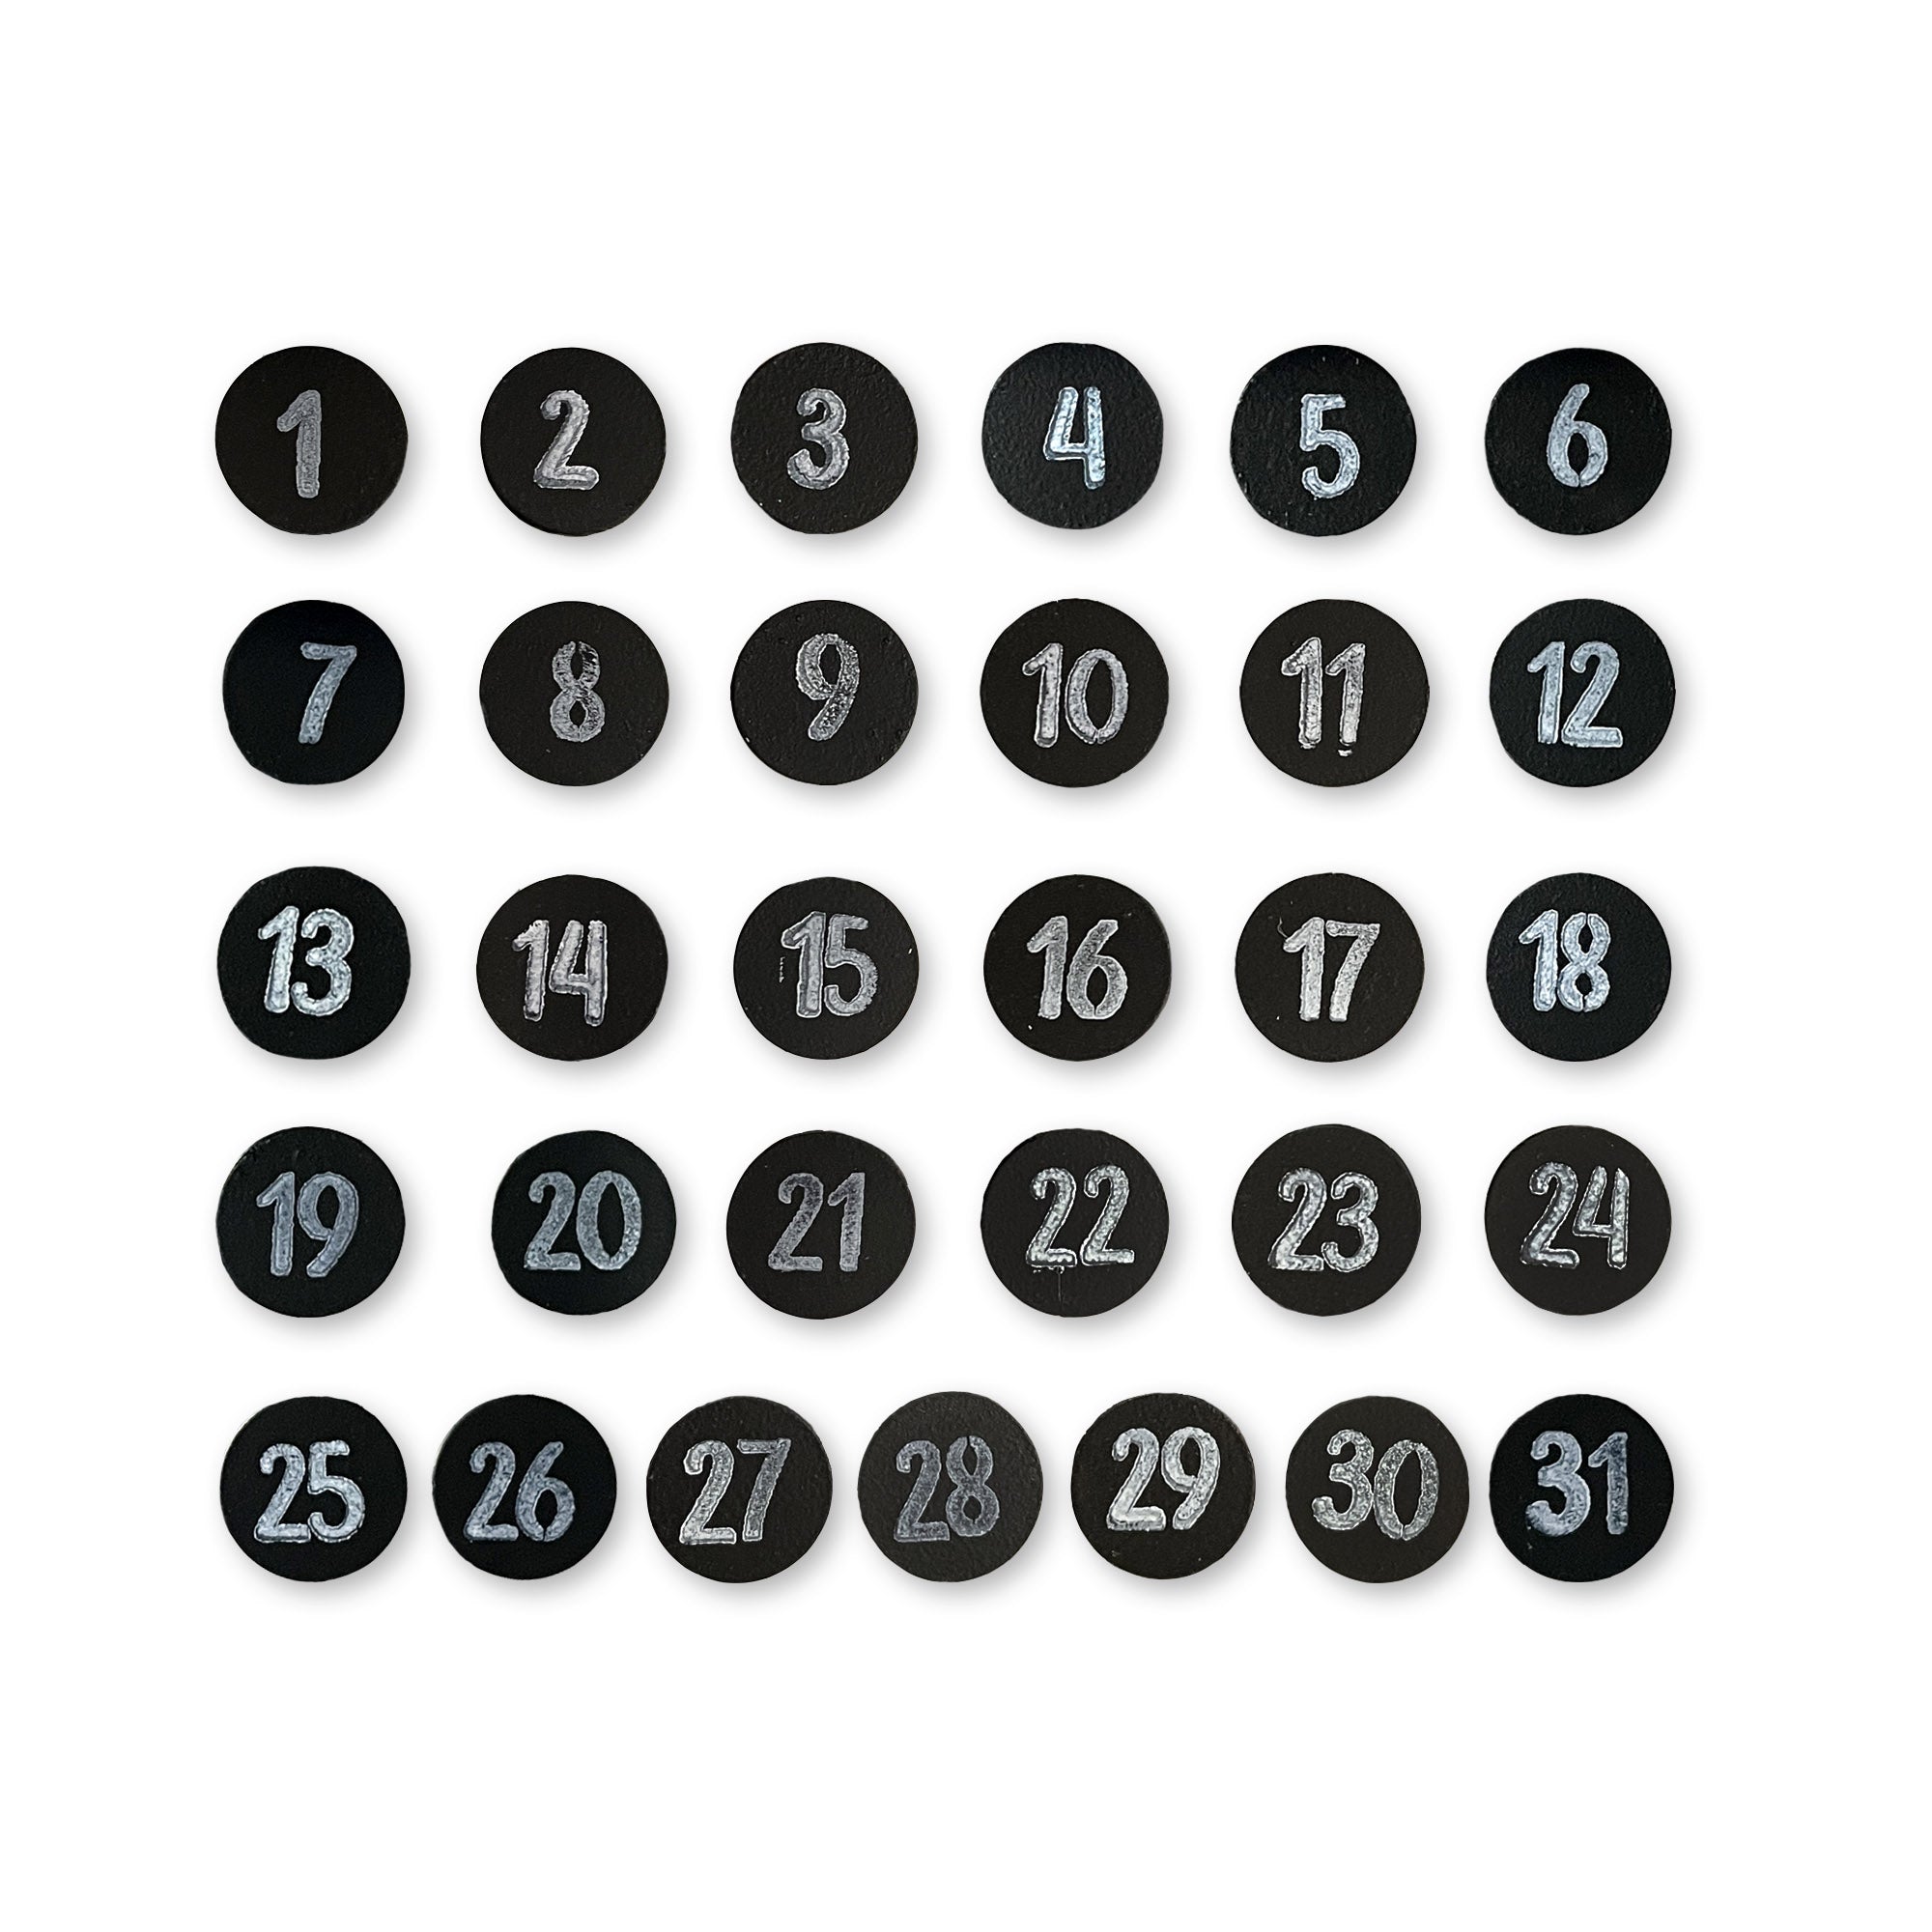 Calendar Number Magnets - Black